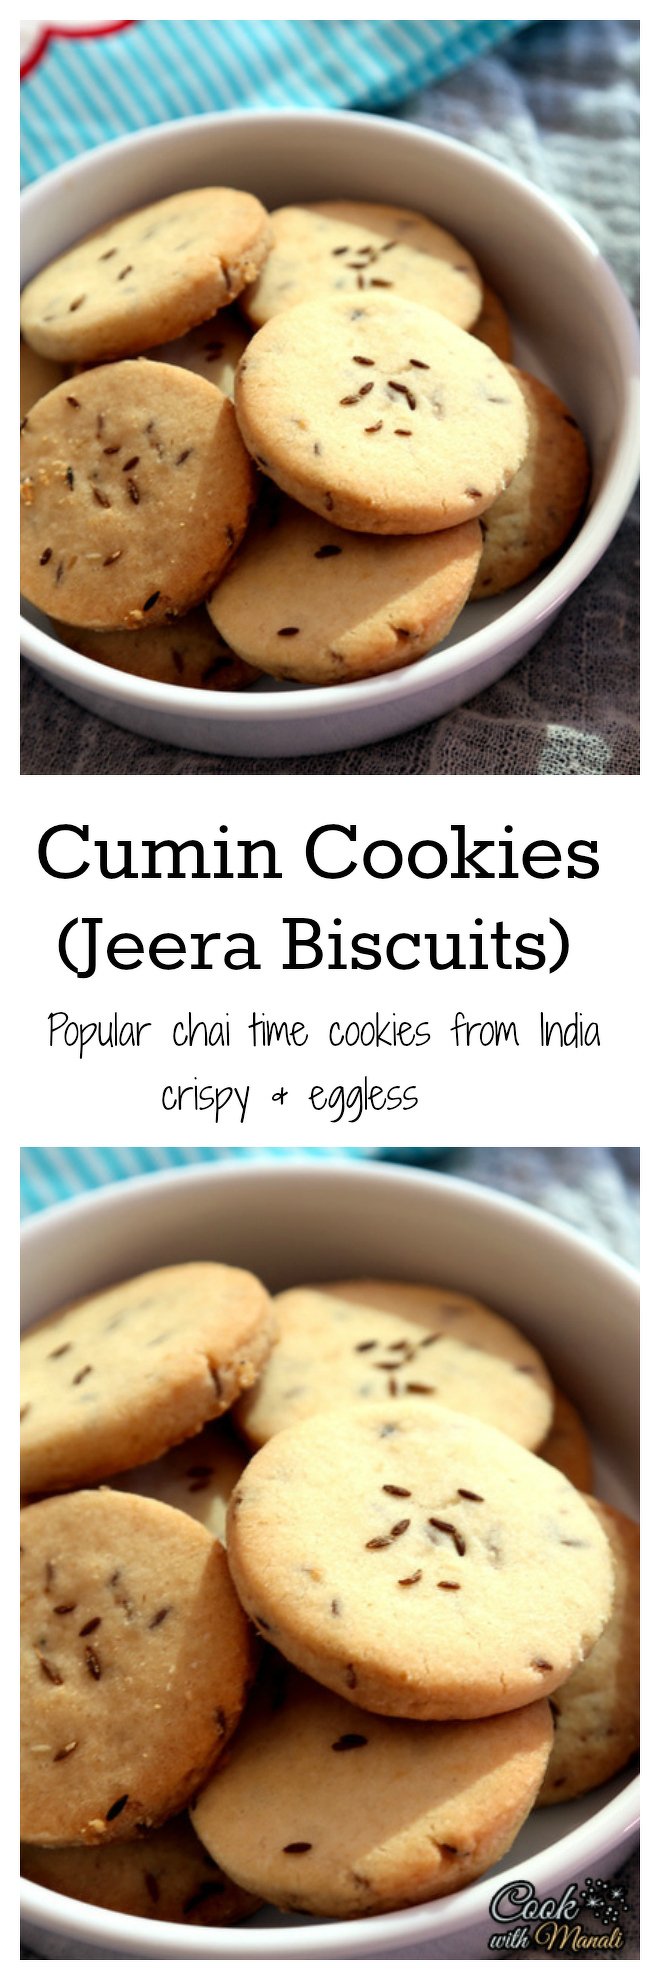 Cumin Cookies-Jeera-Biscuits-Collage-nocwm